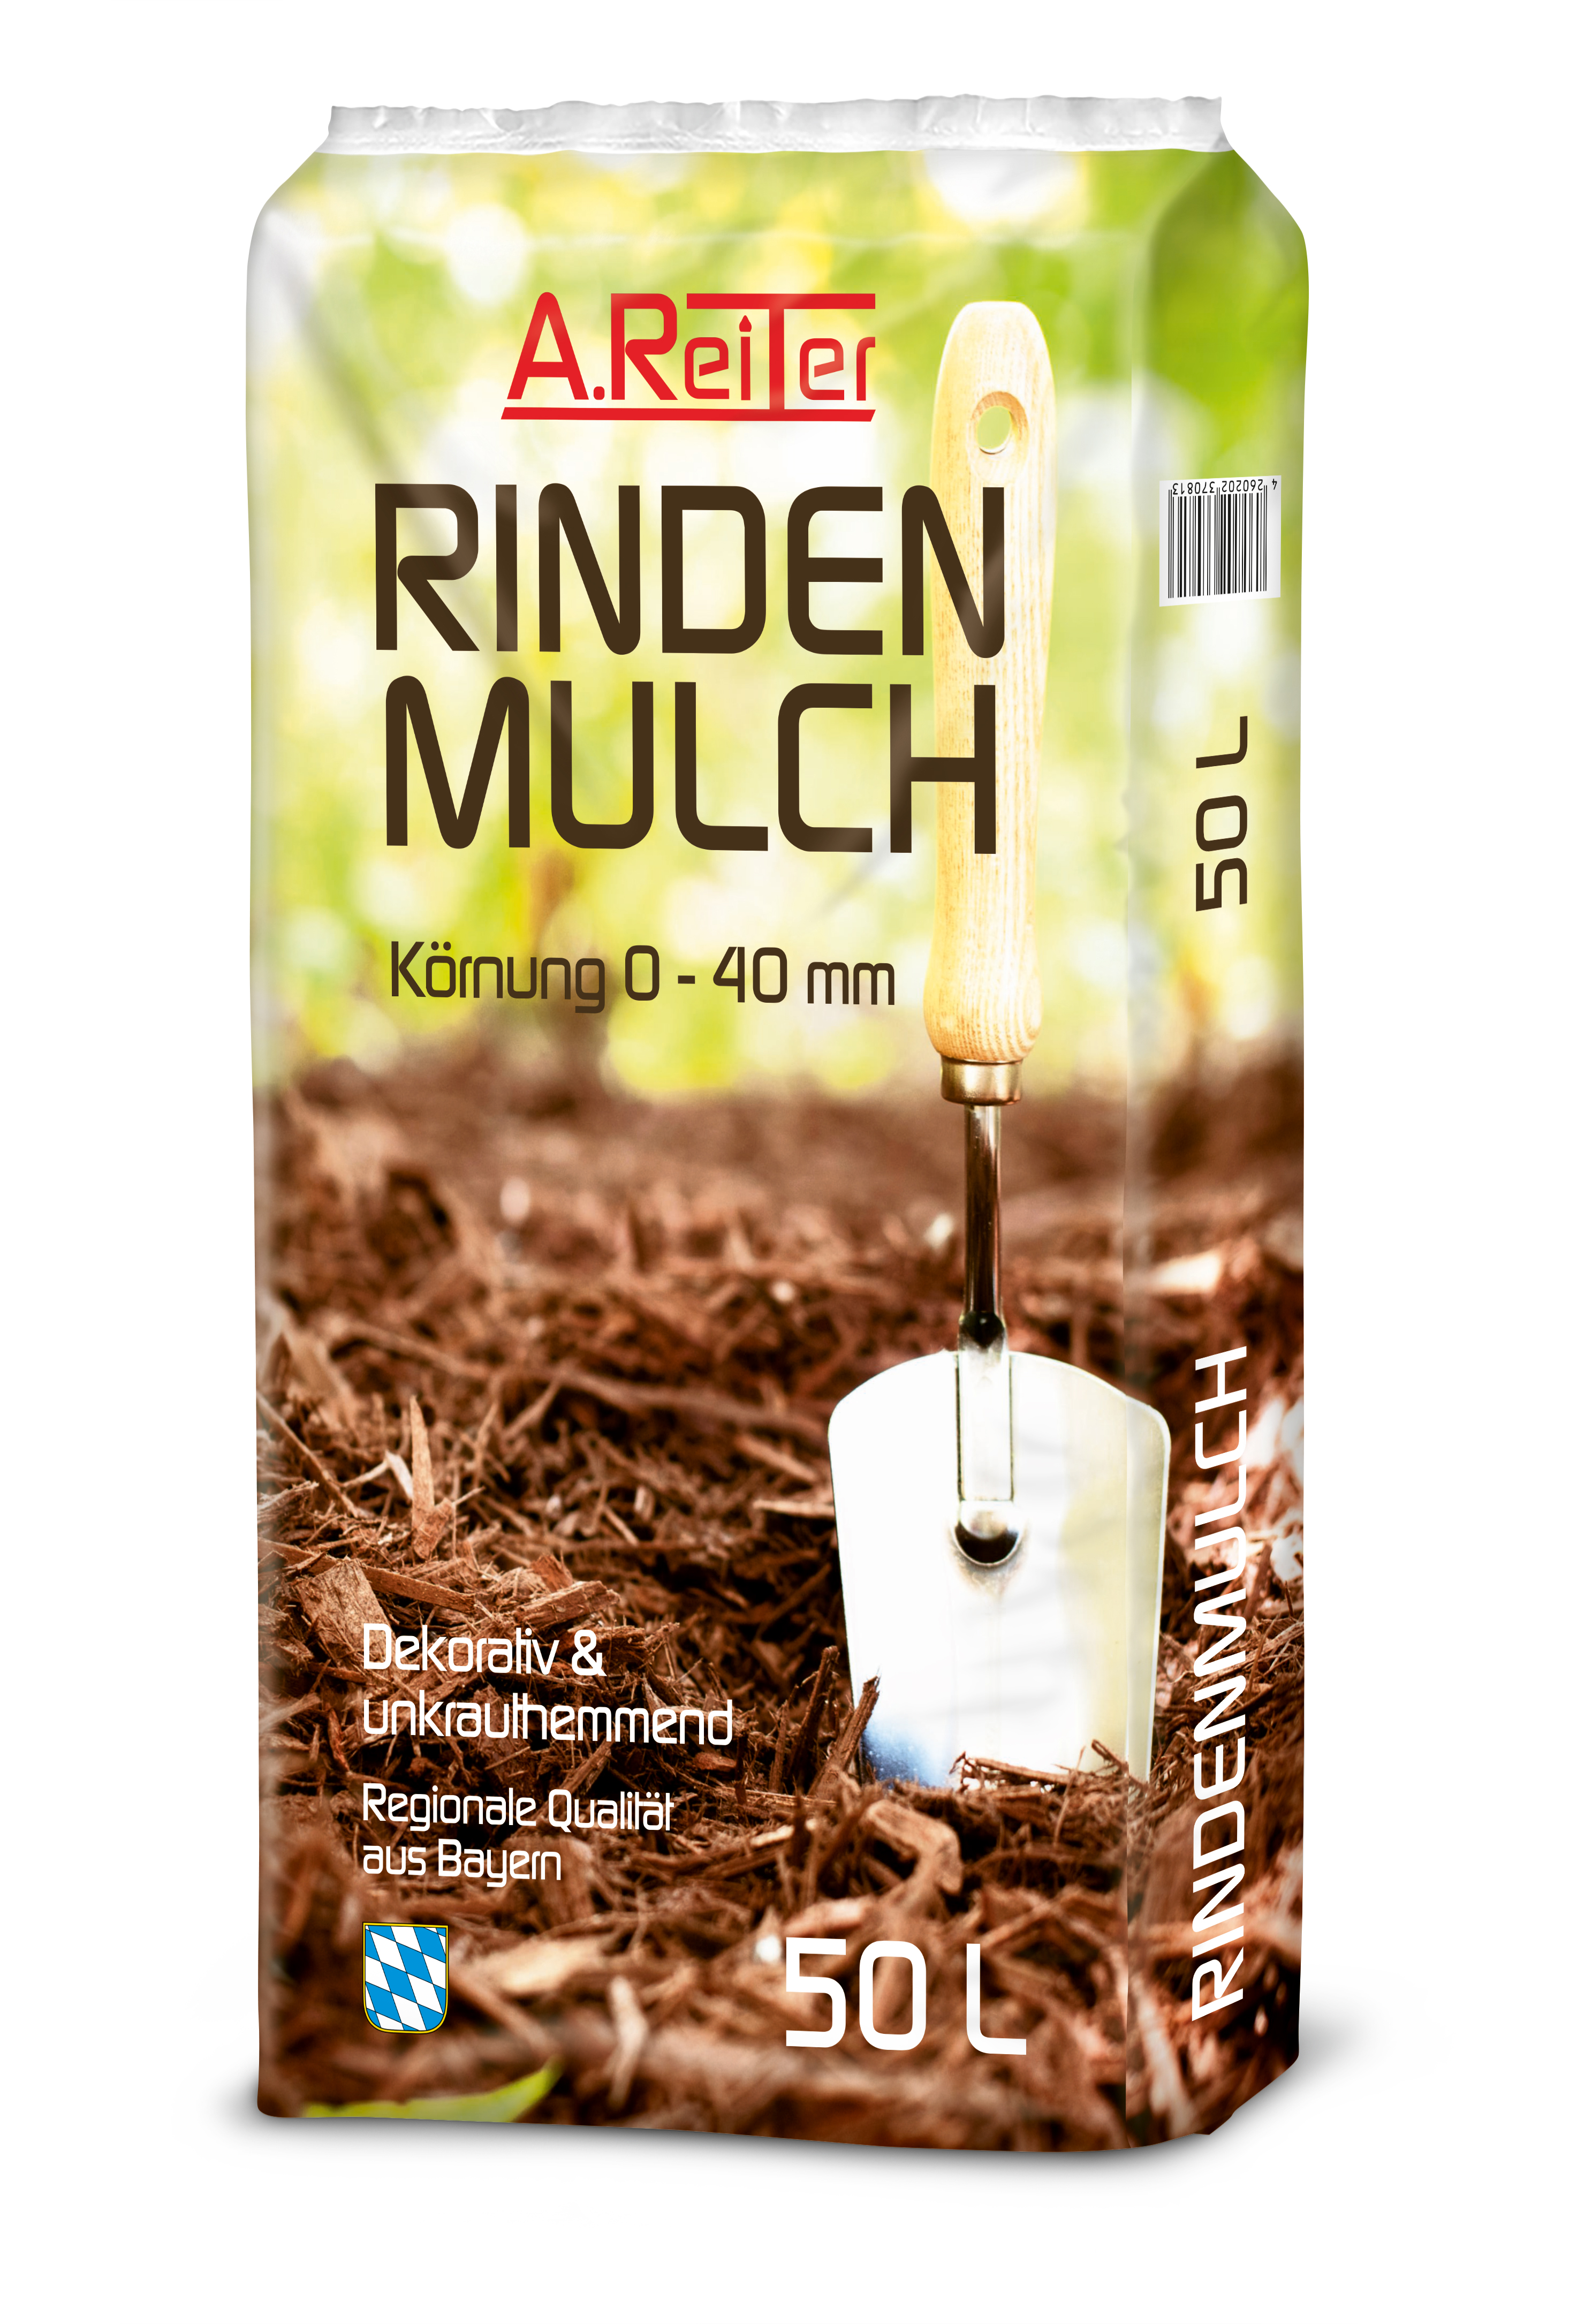 A.Reiter Rindenmulch 50 Liter